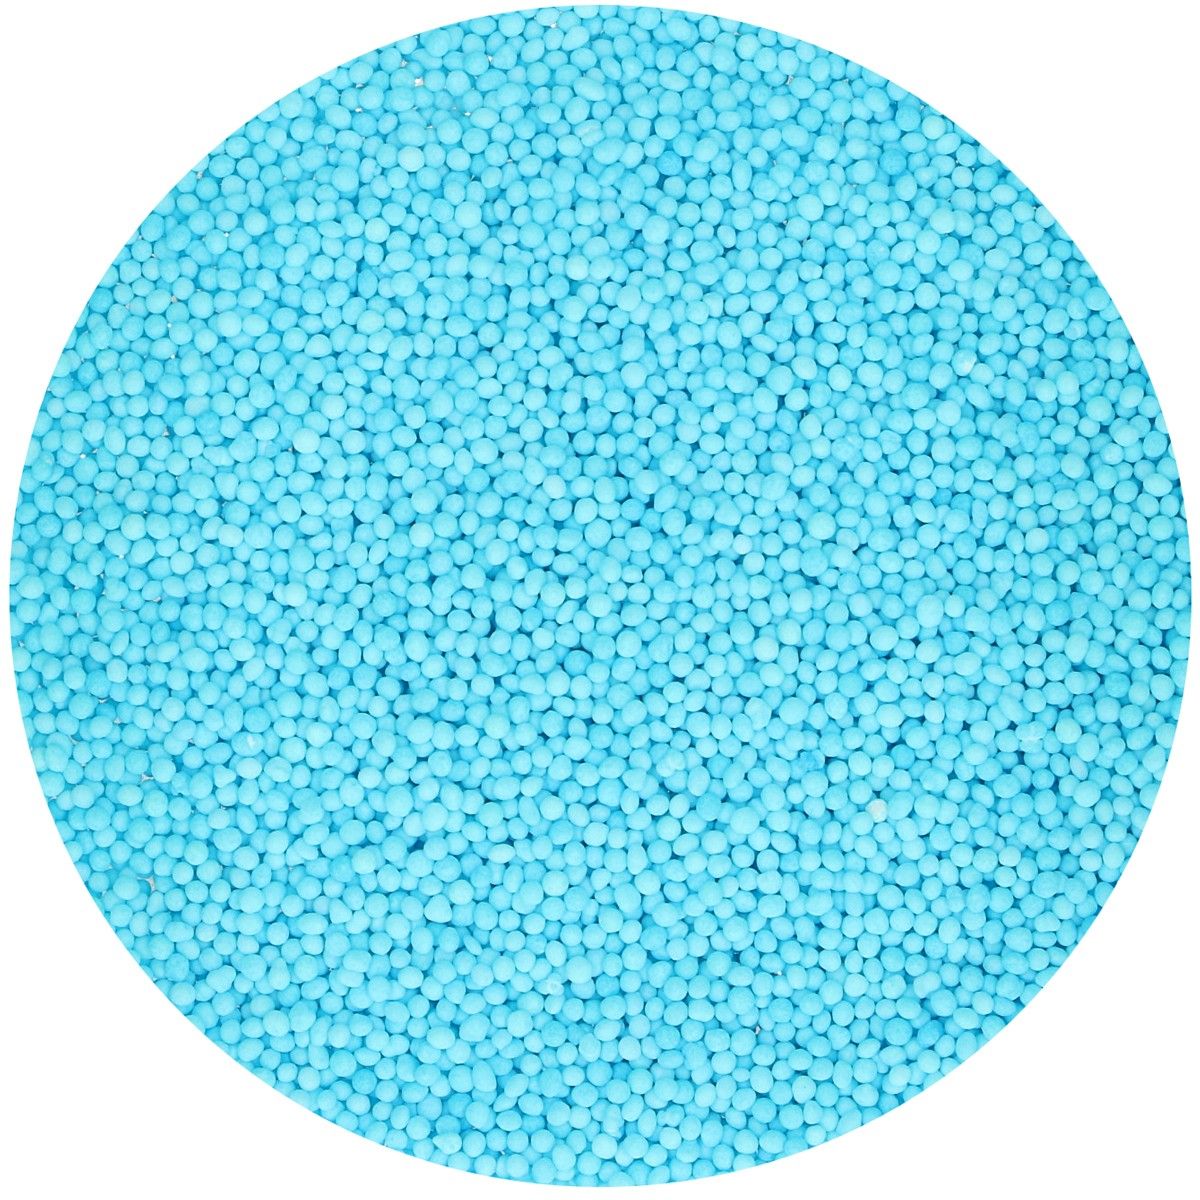 Imagen de producto: Non pareils azul claro, 80 g - Funcakes